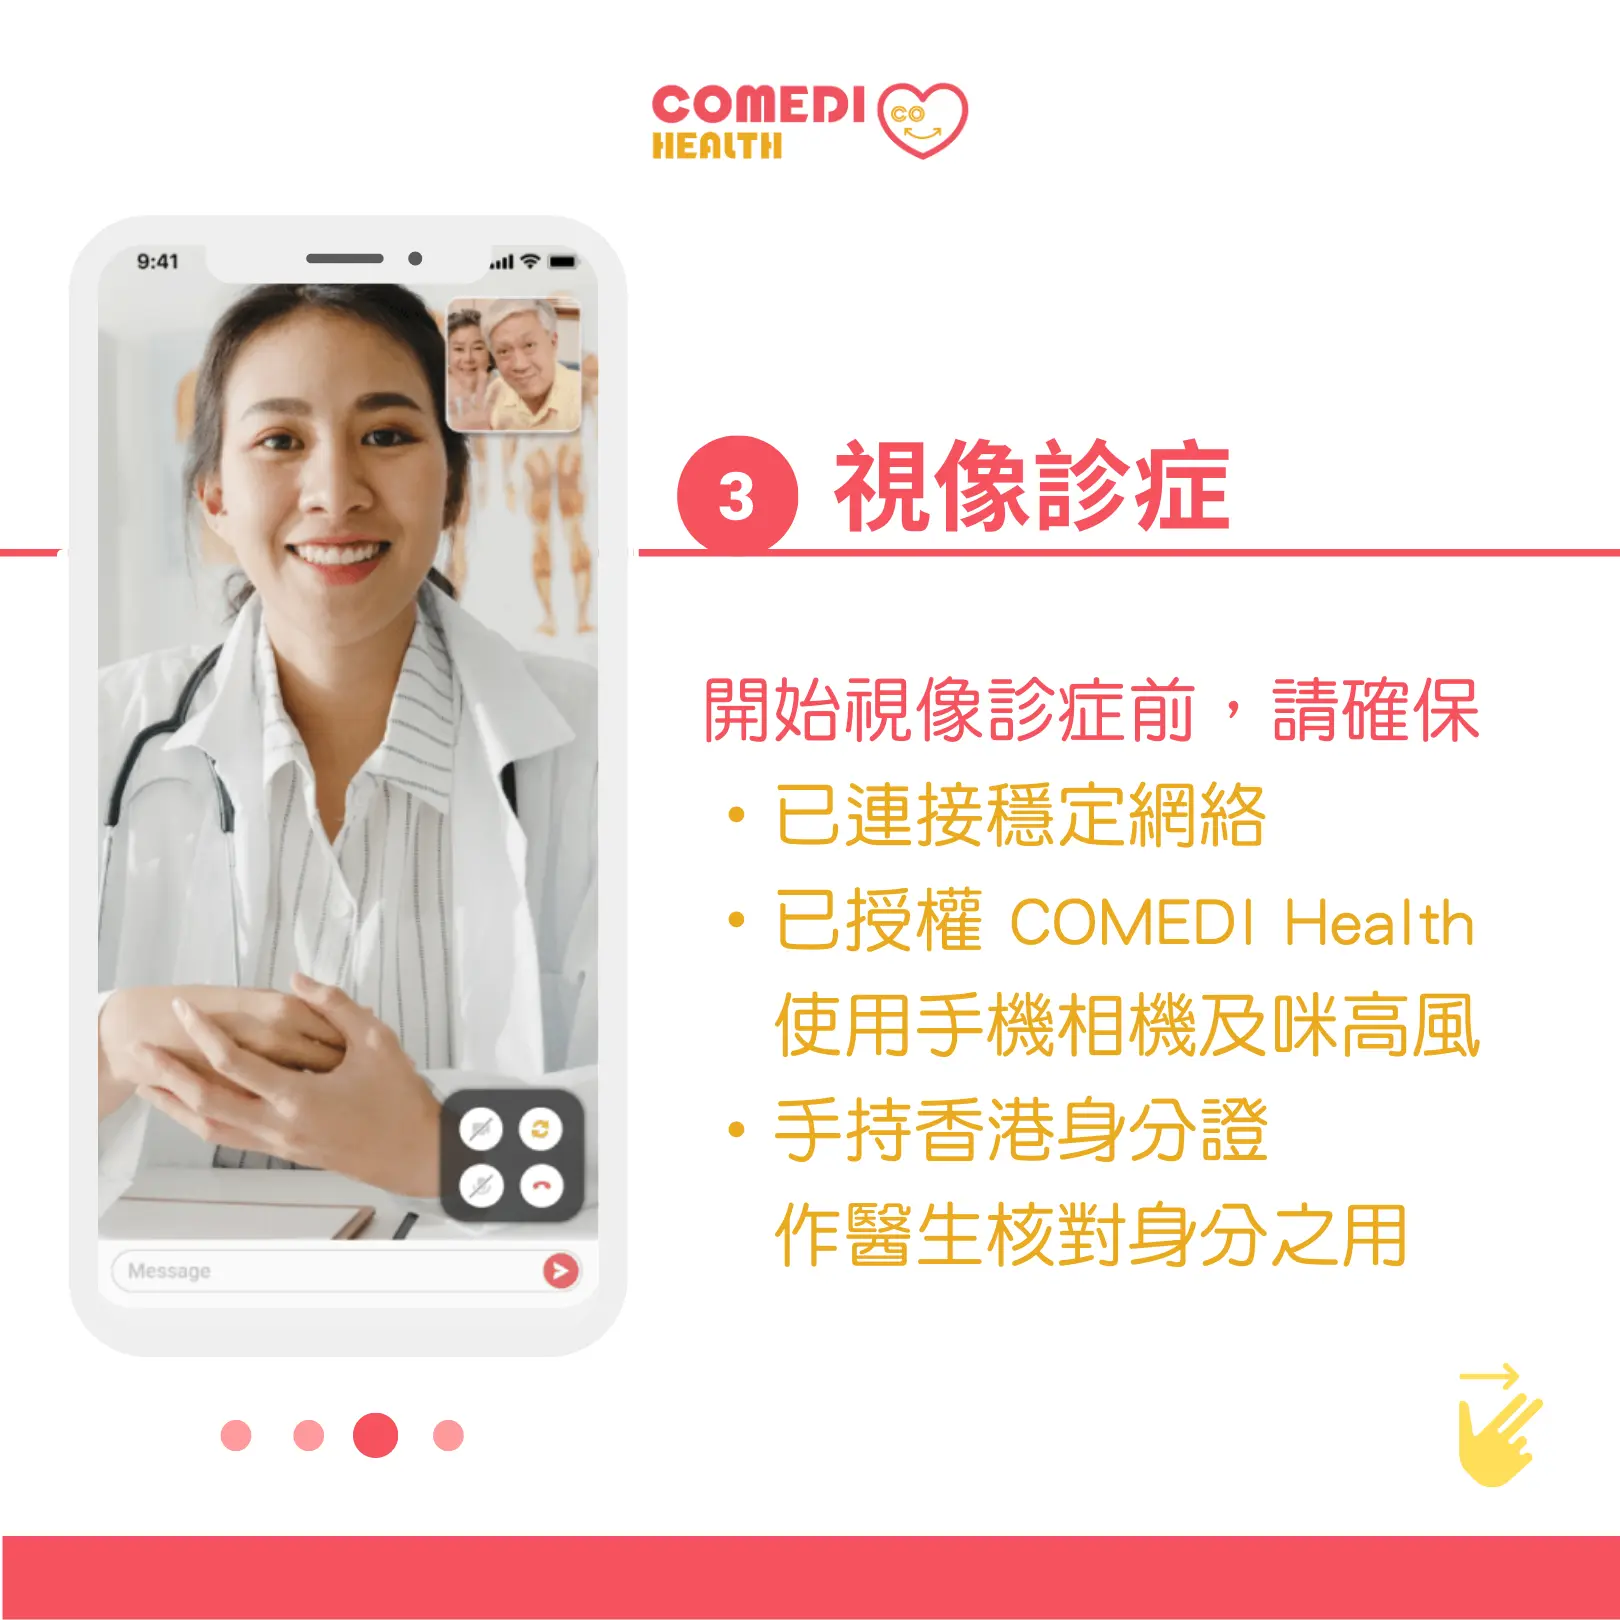 開始視像診症前，請確保已連接穩定網絡，已授權 COMEDI Health 使用手機相機及咪高風，以及手持香港身分證作醫生核對身分之用。